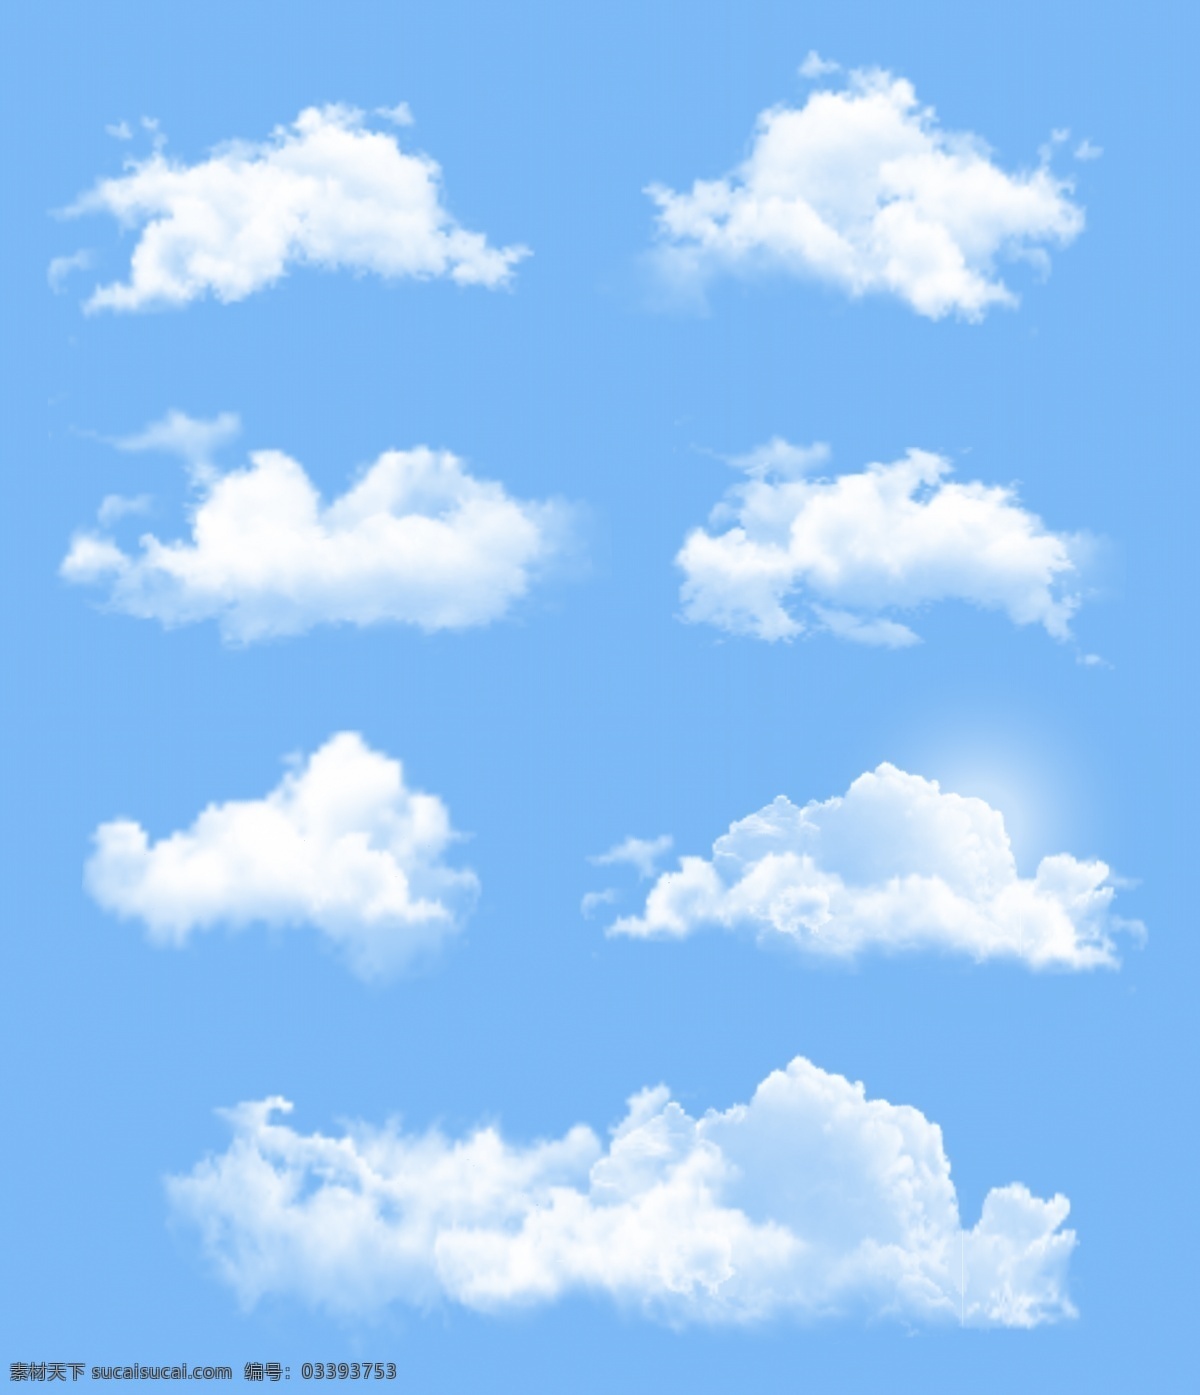 白云 云朵 云 卡通云 卡通白云 矢量云朵 矢量白云 白云素材 矢量素材 蓝天白云矢量